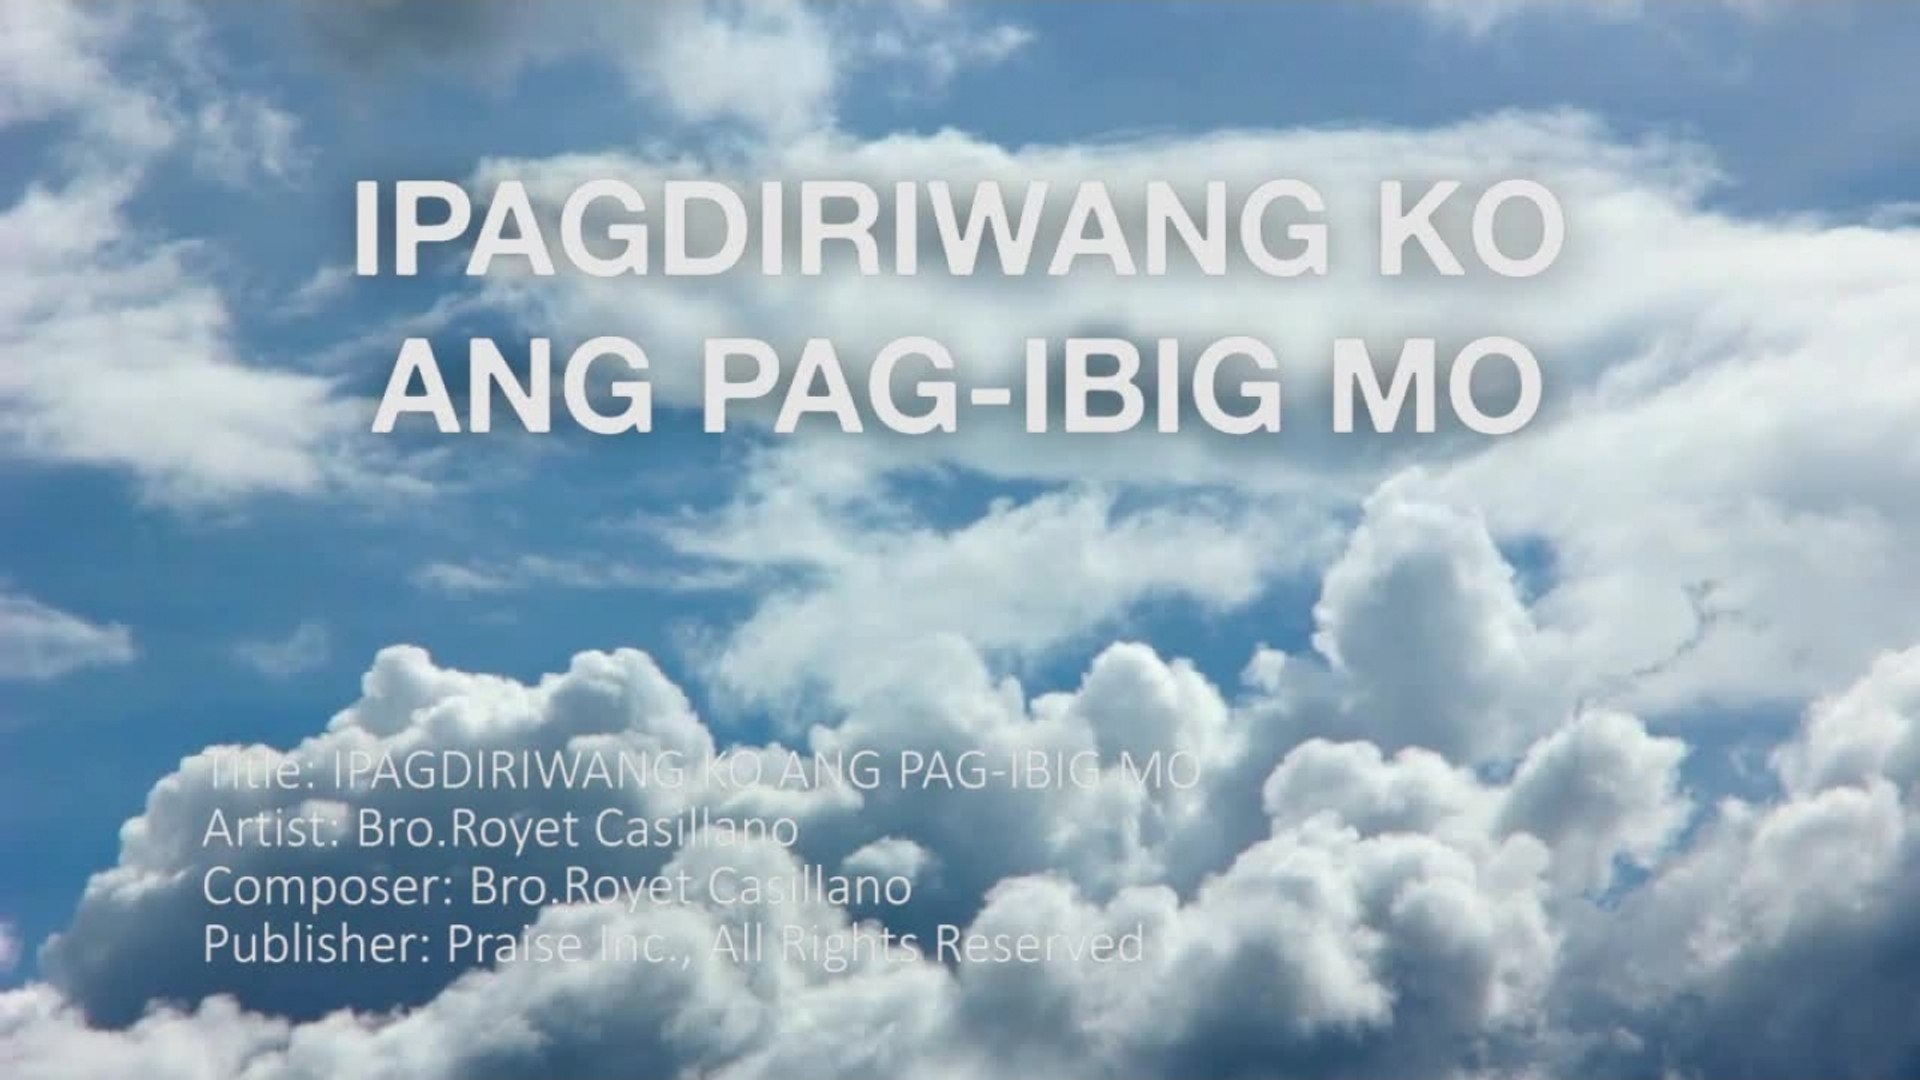 Royet Casillano - Ipagdiriwang Ko Ang Pag-ibig Mo